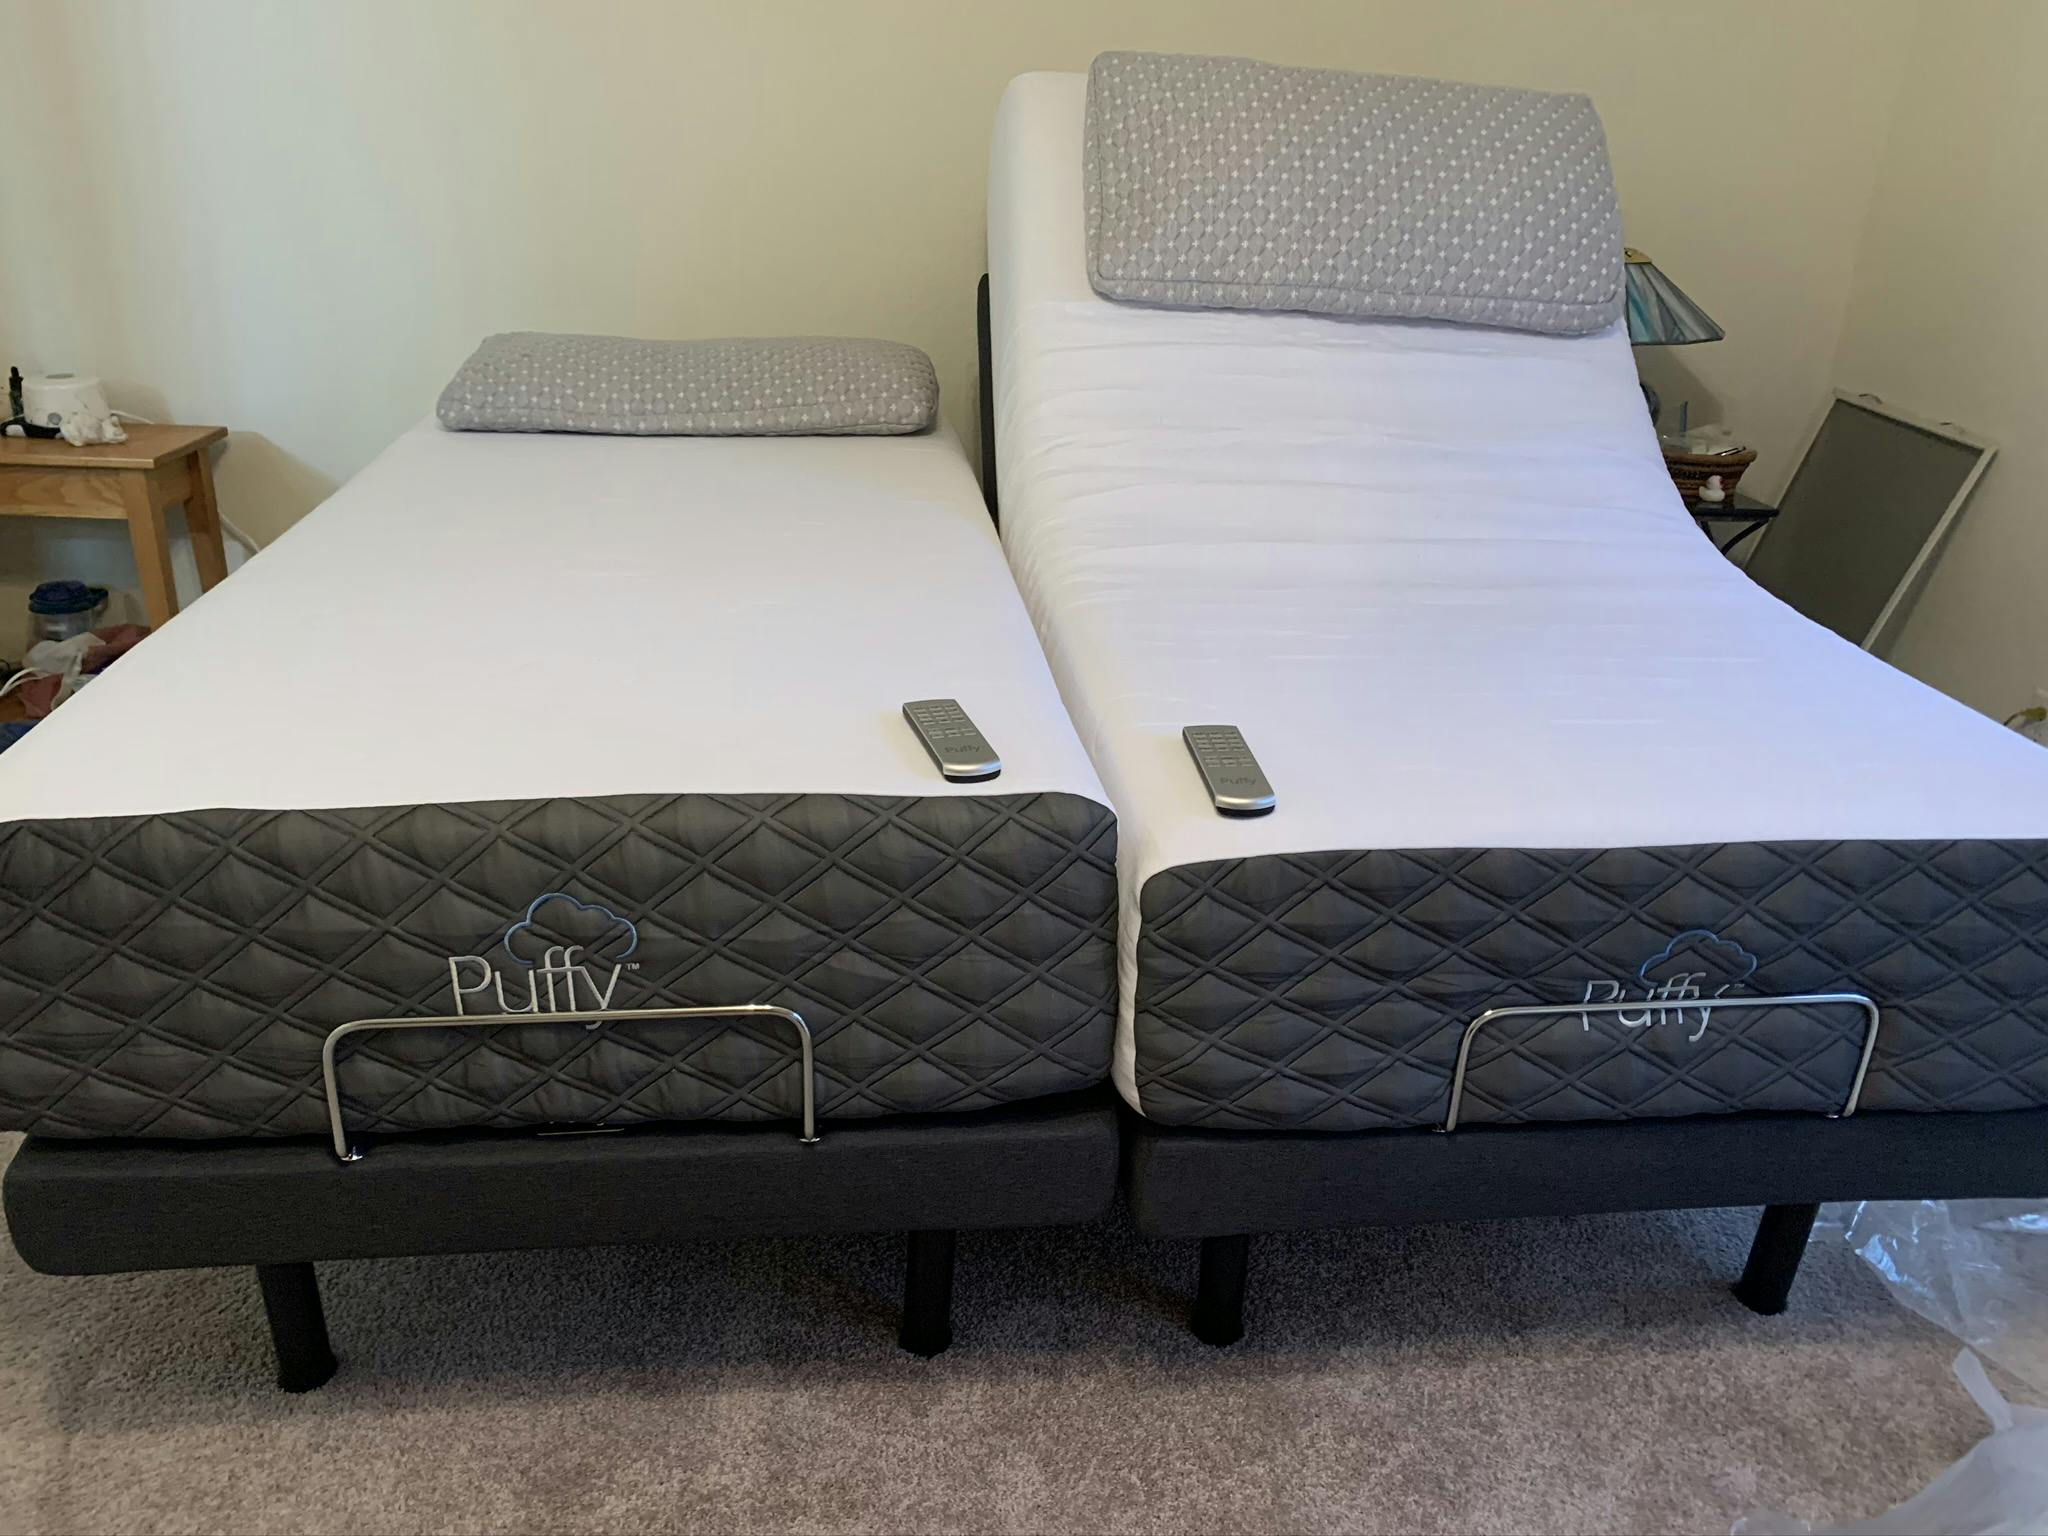 puffy mattress king size price